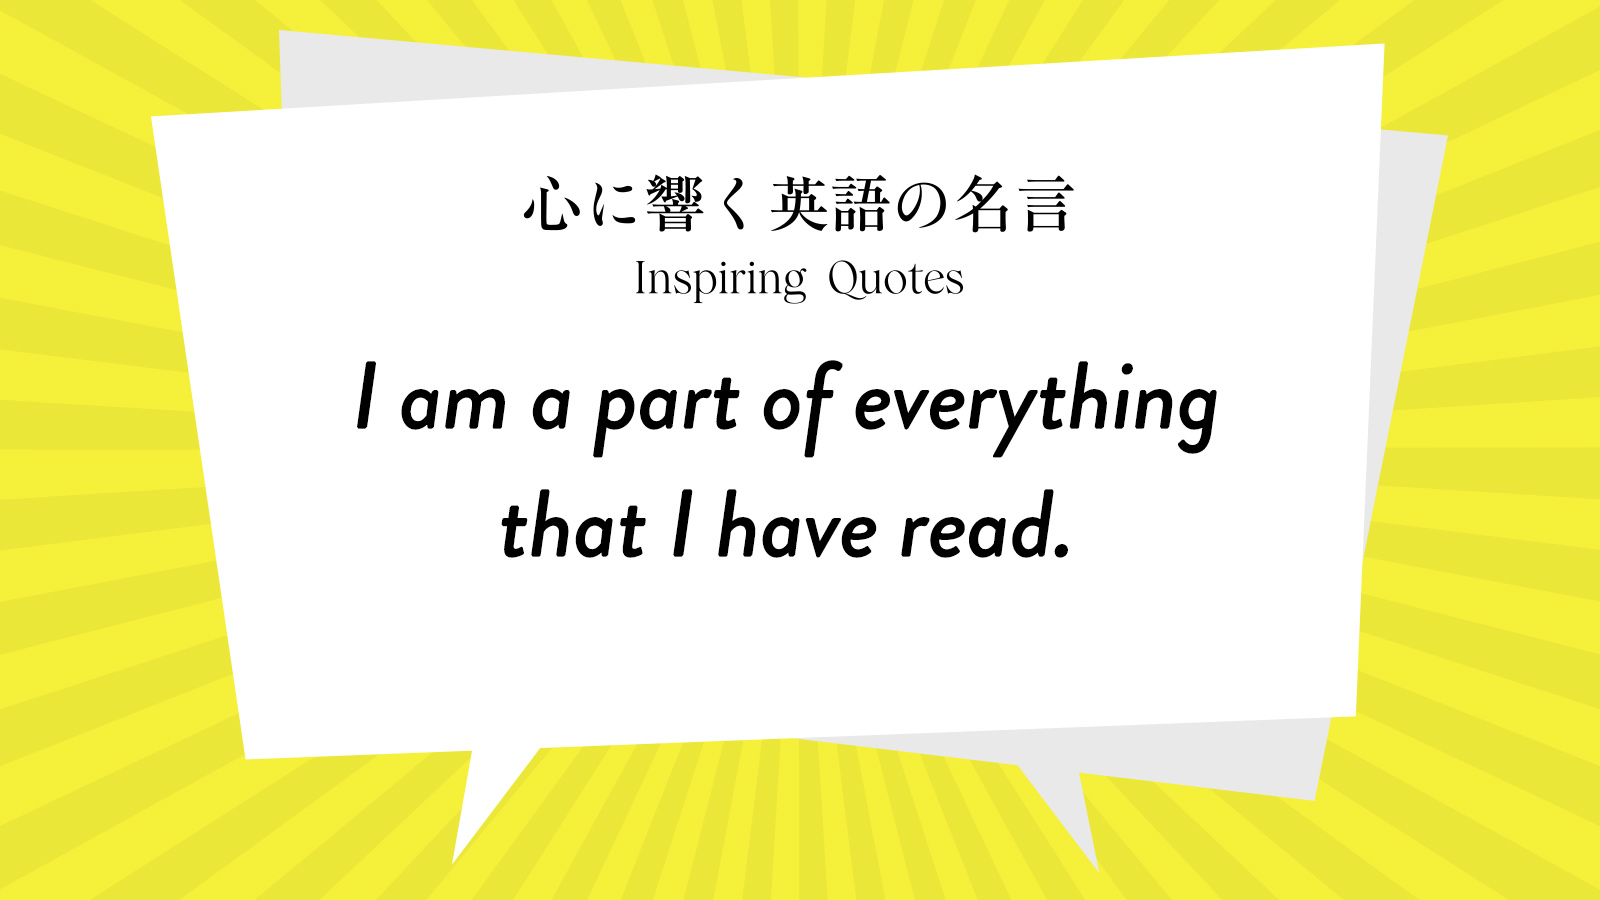 今週の名言 “I am a part of everything that I have read.” | Inspiring Quotes: 心に響く英語の名言